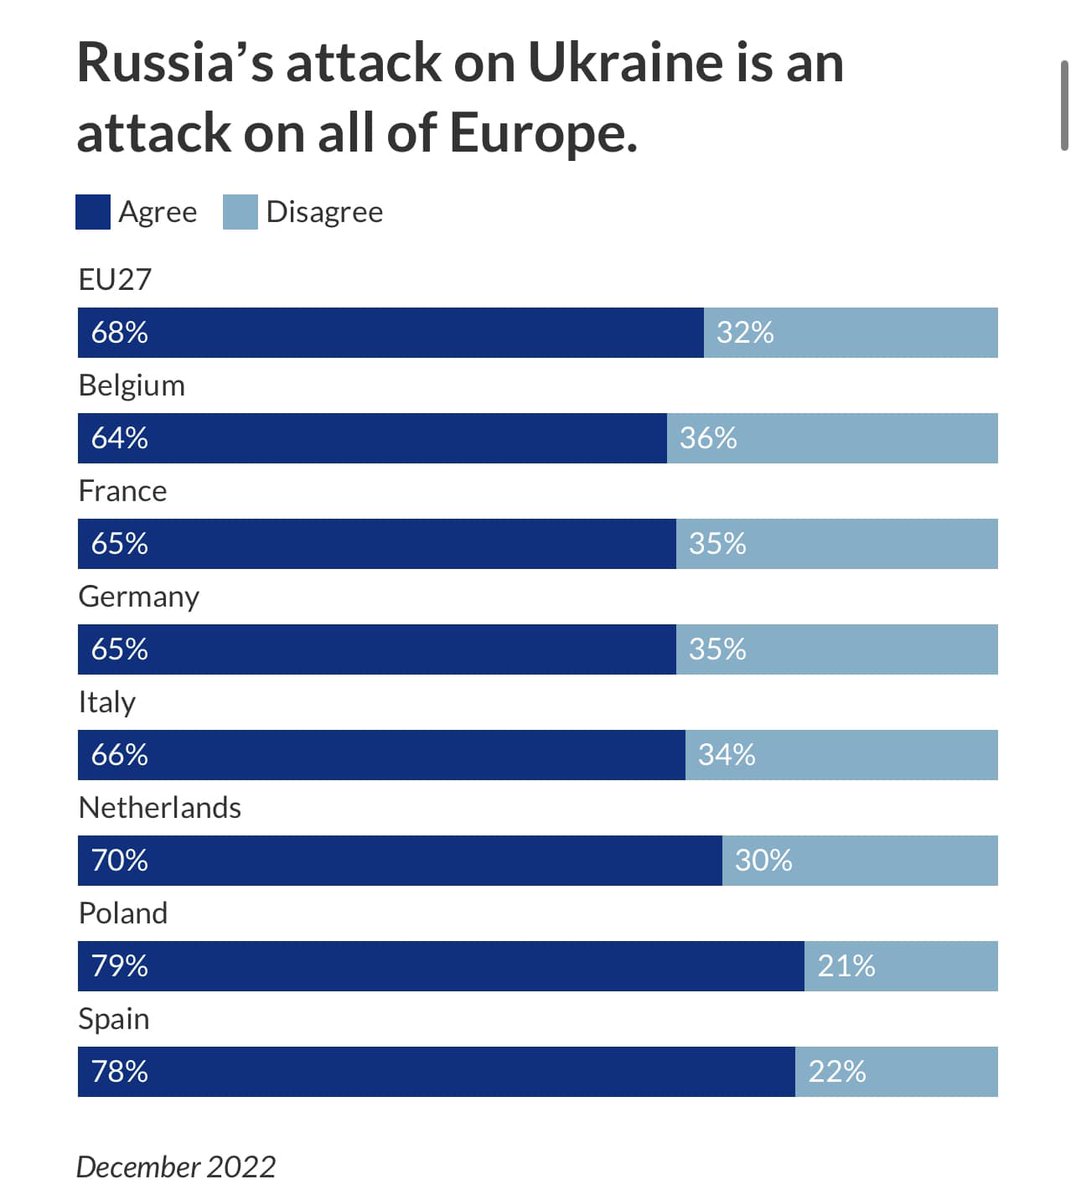 68% европейцев расценивают нападение на Украину как нападение на всю Европу, говорится в опросе eupinions. 
В победу Украины в войне с Россией верят 61% европейцев, но только 40% европейцев считают санкции против РФ эффективными.
Детали тут eupinions.eu/de/text/anxiou…